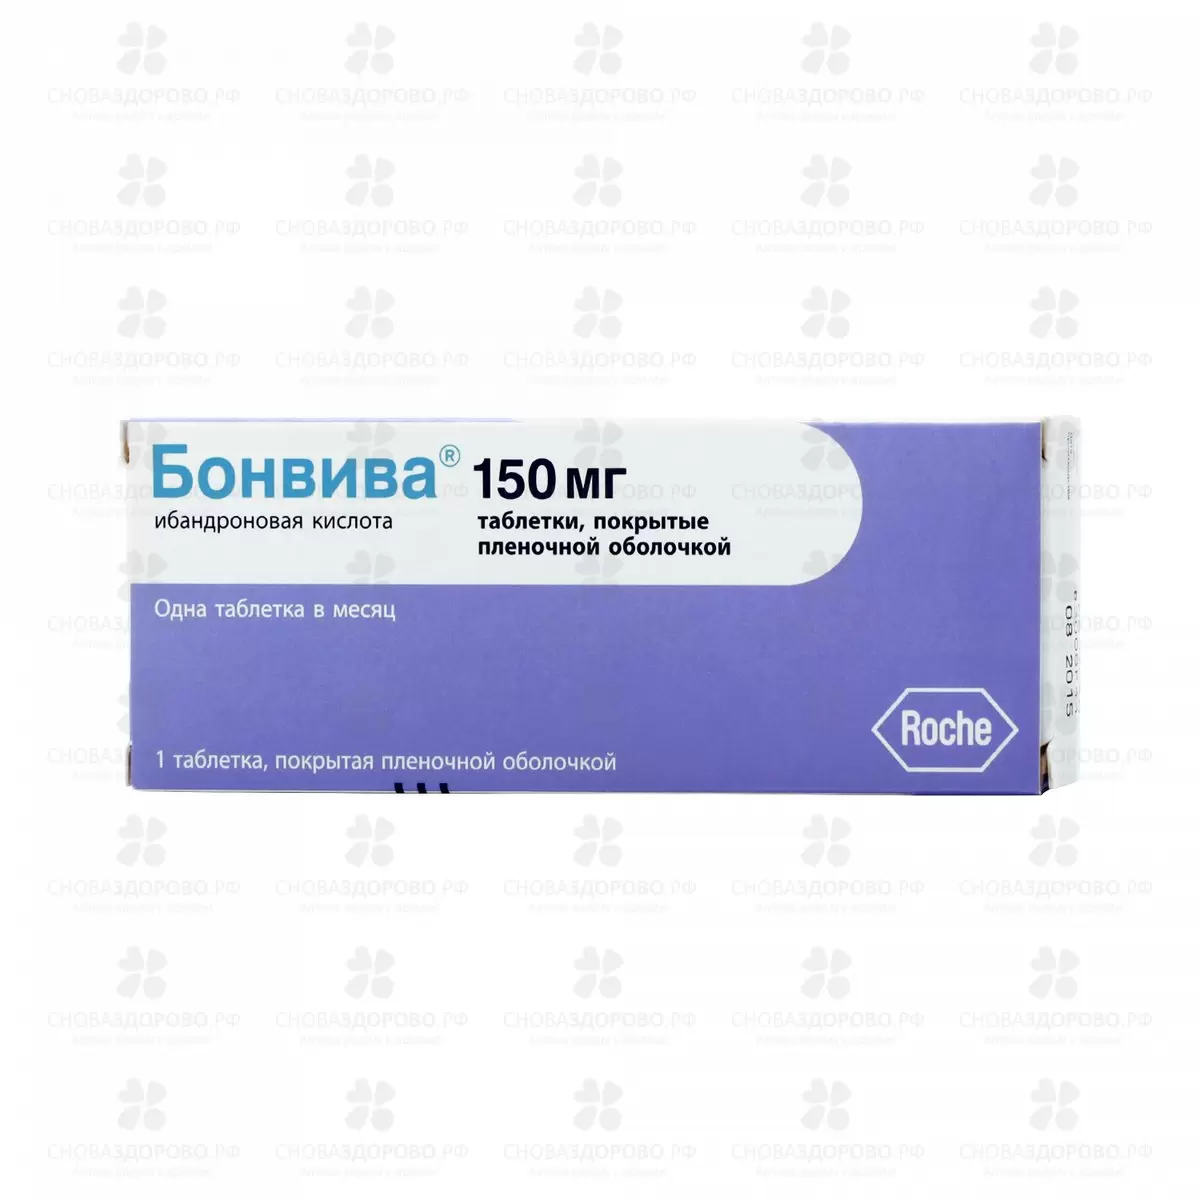 Бонвива таблетки покрытые пленочной оболочкой 150мг №1 ✅ 11848/06448 | Сноваздорово.рф